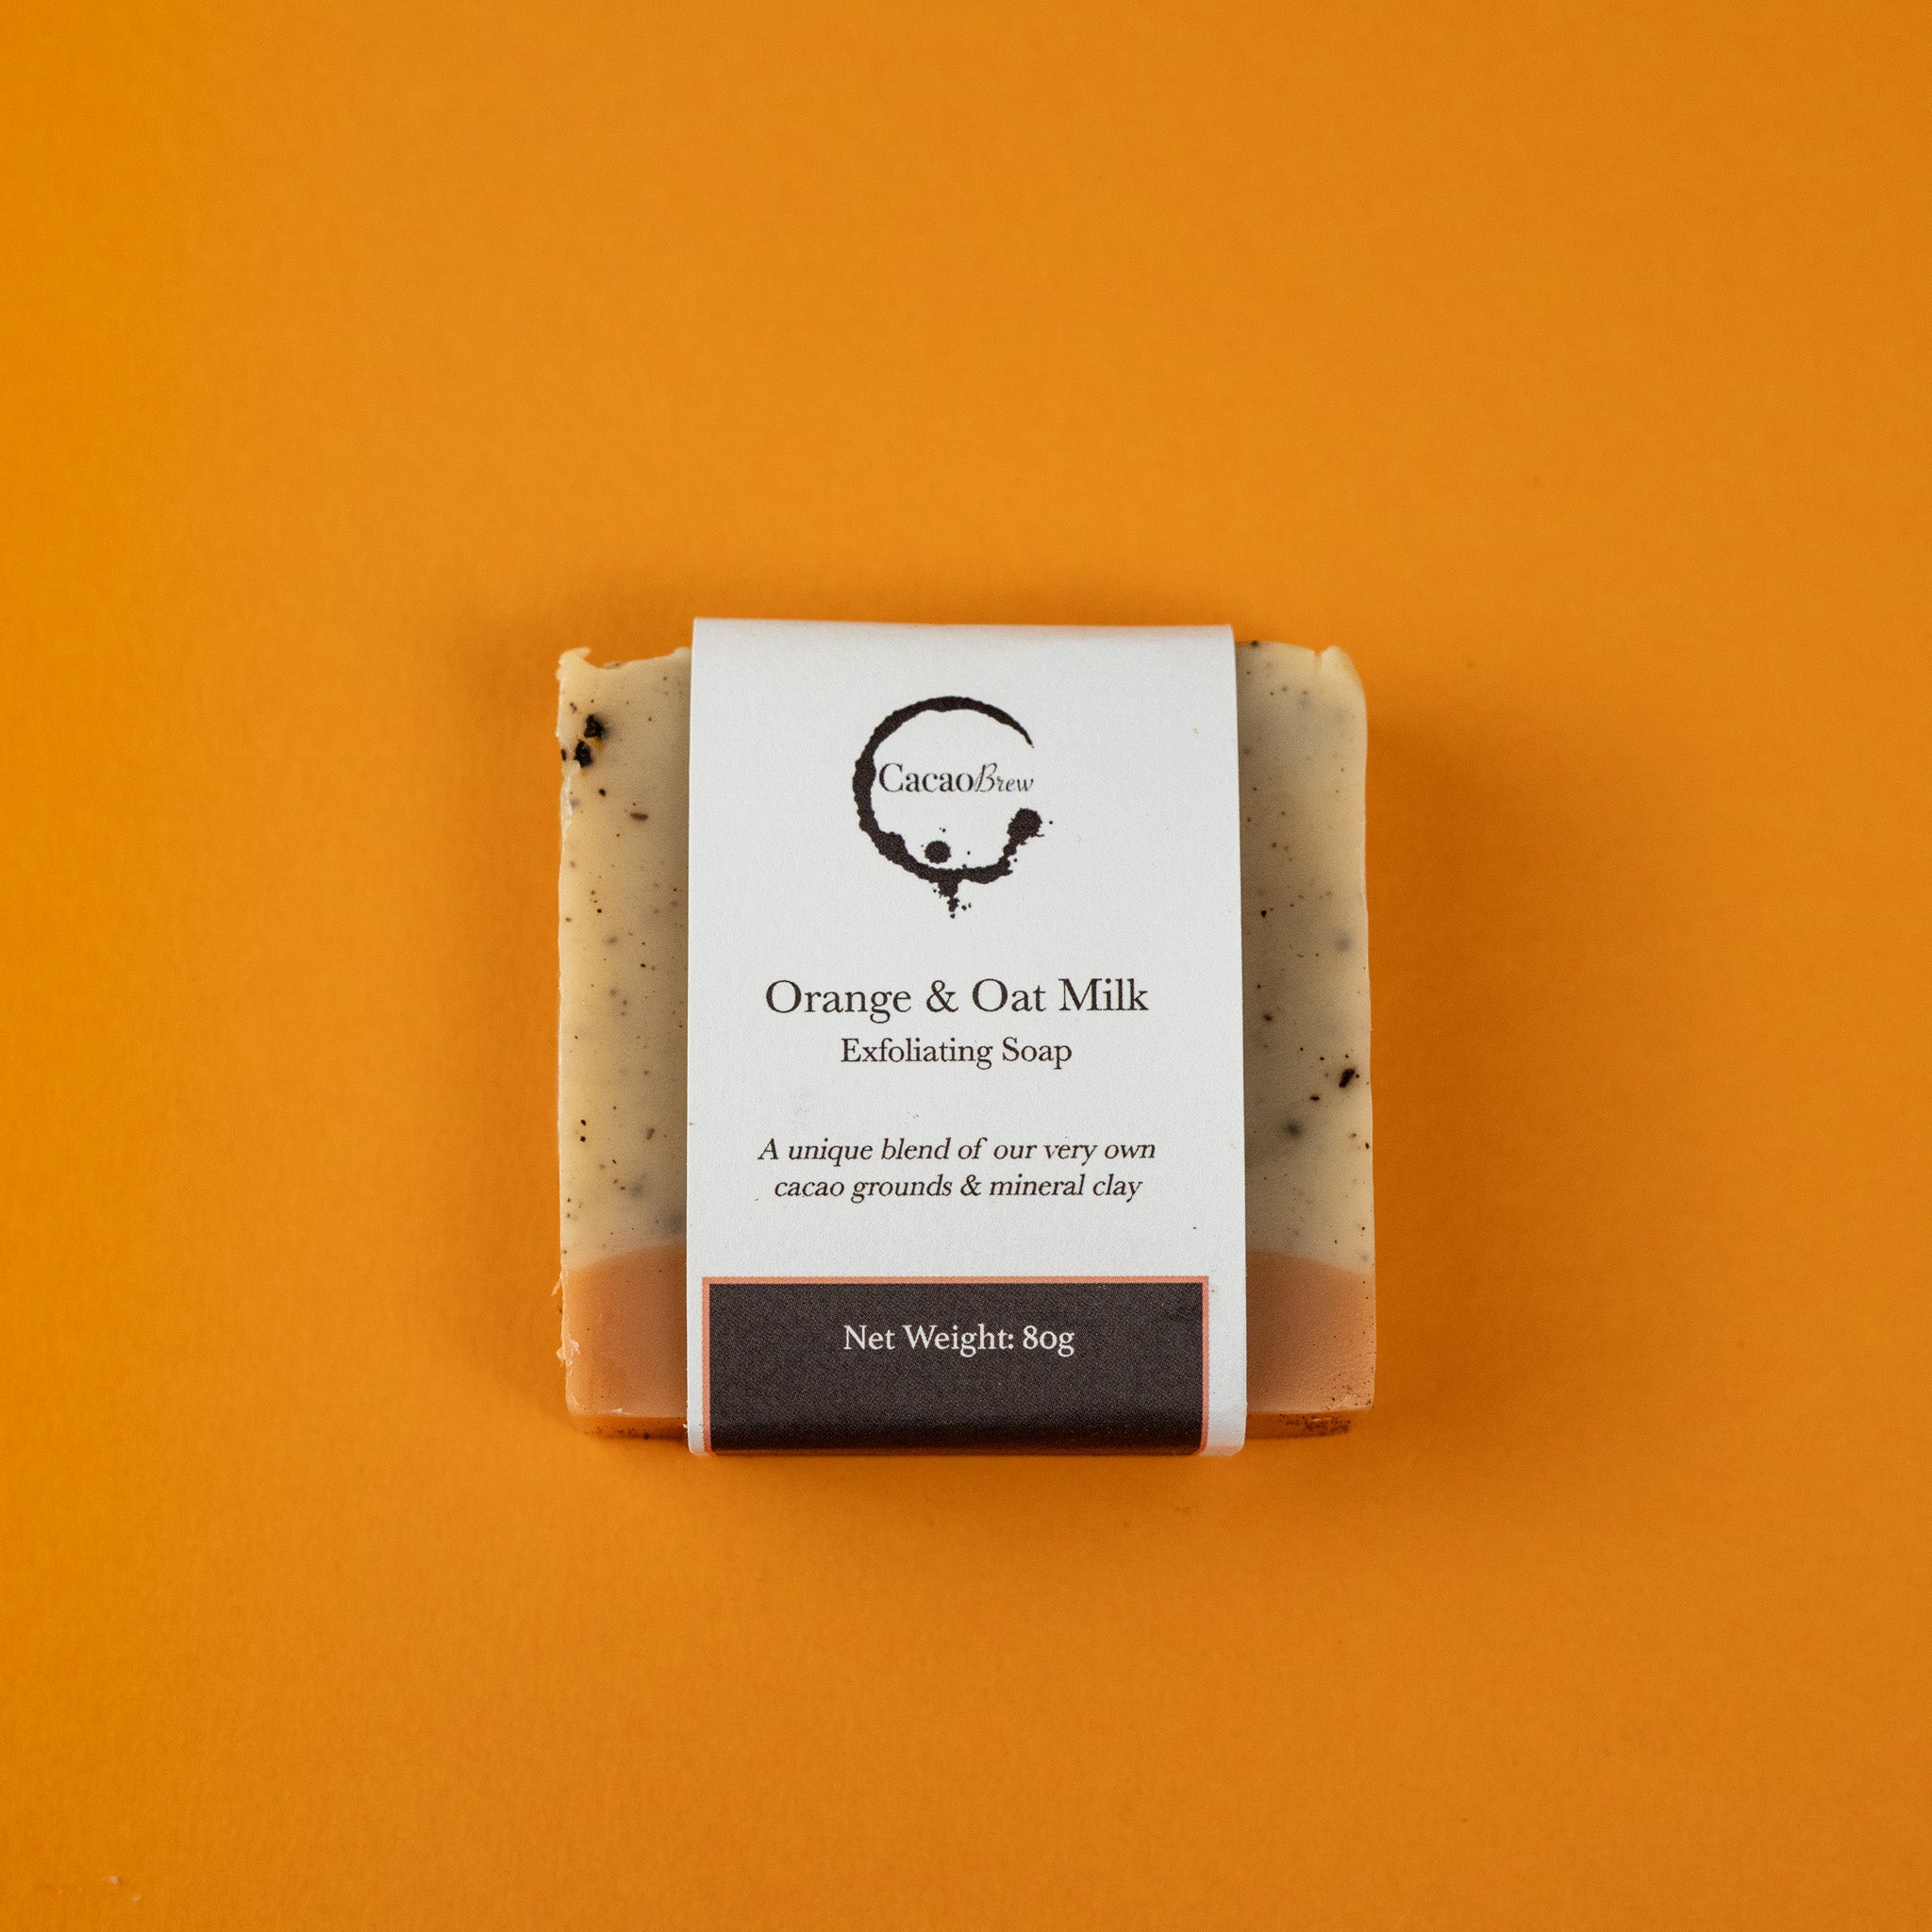 Repurposed Cacao, Orange & Oat Milk Exfoliating Soap